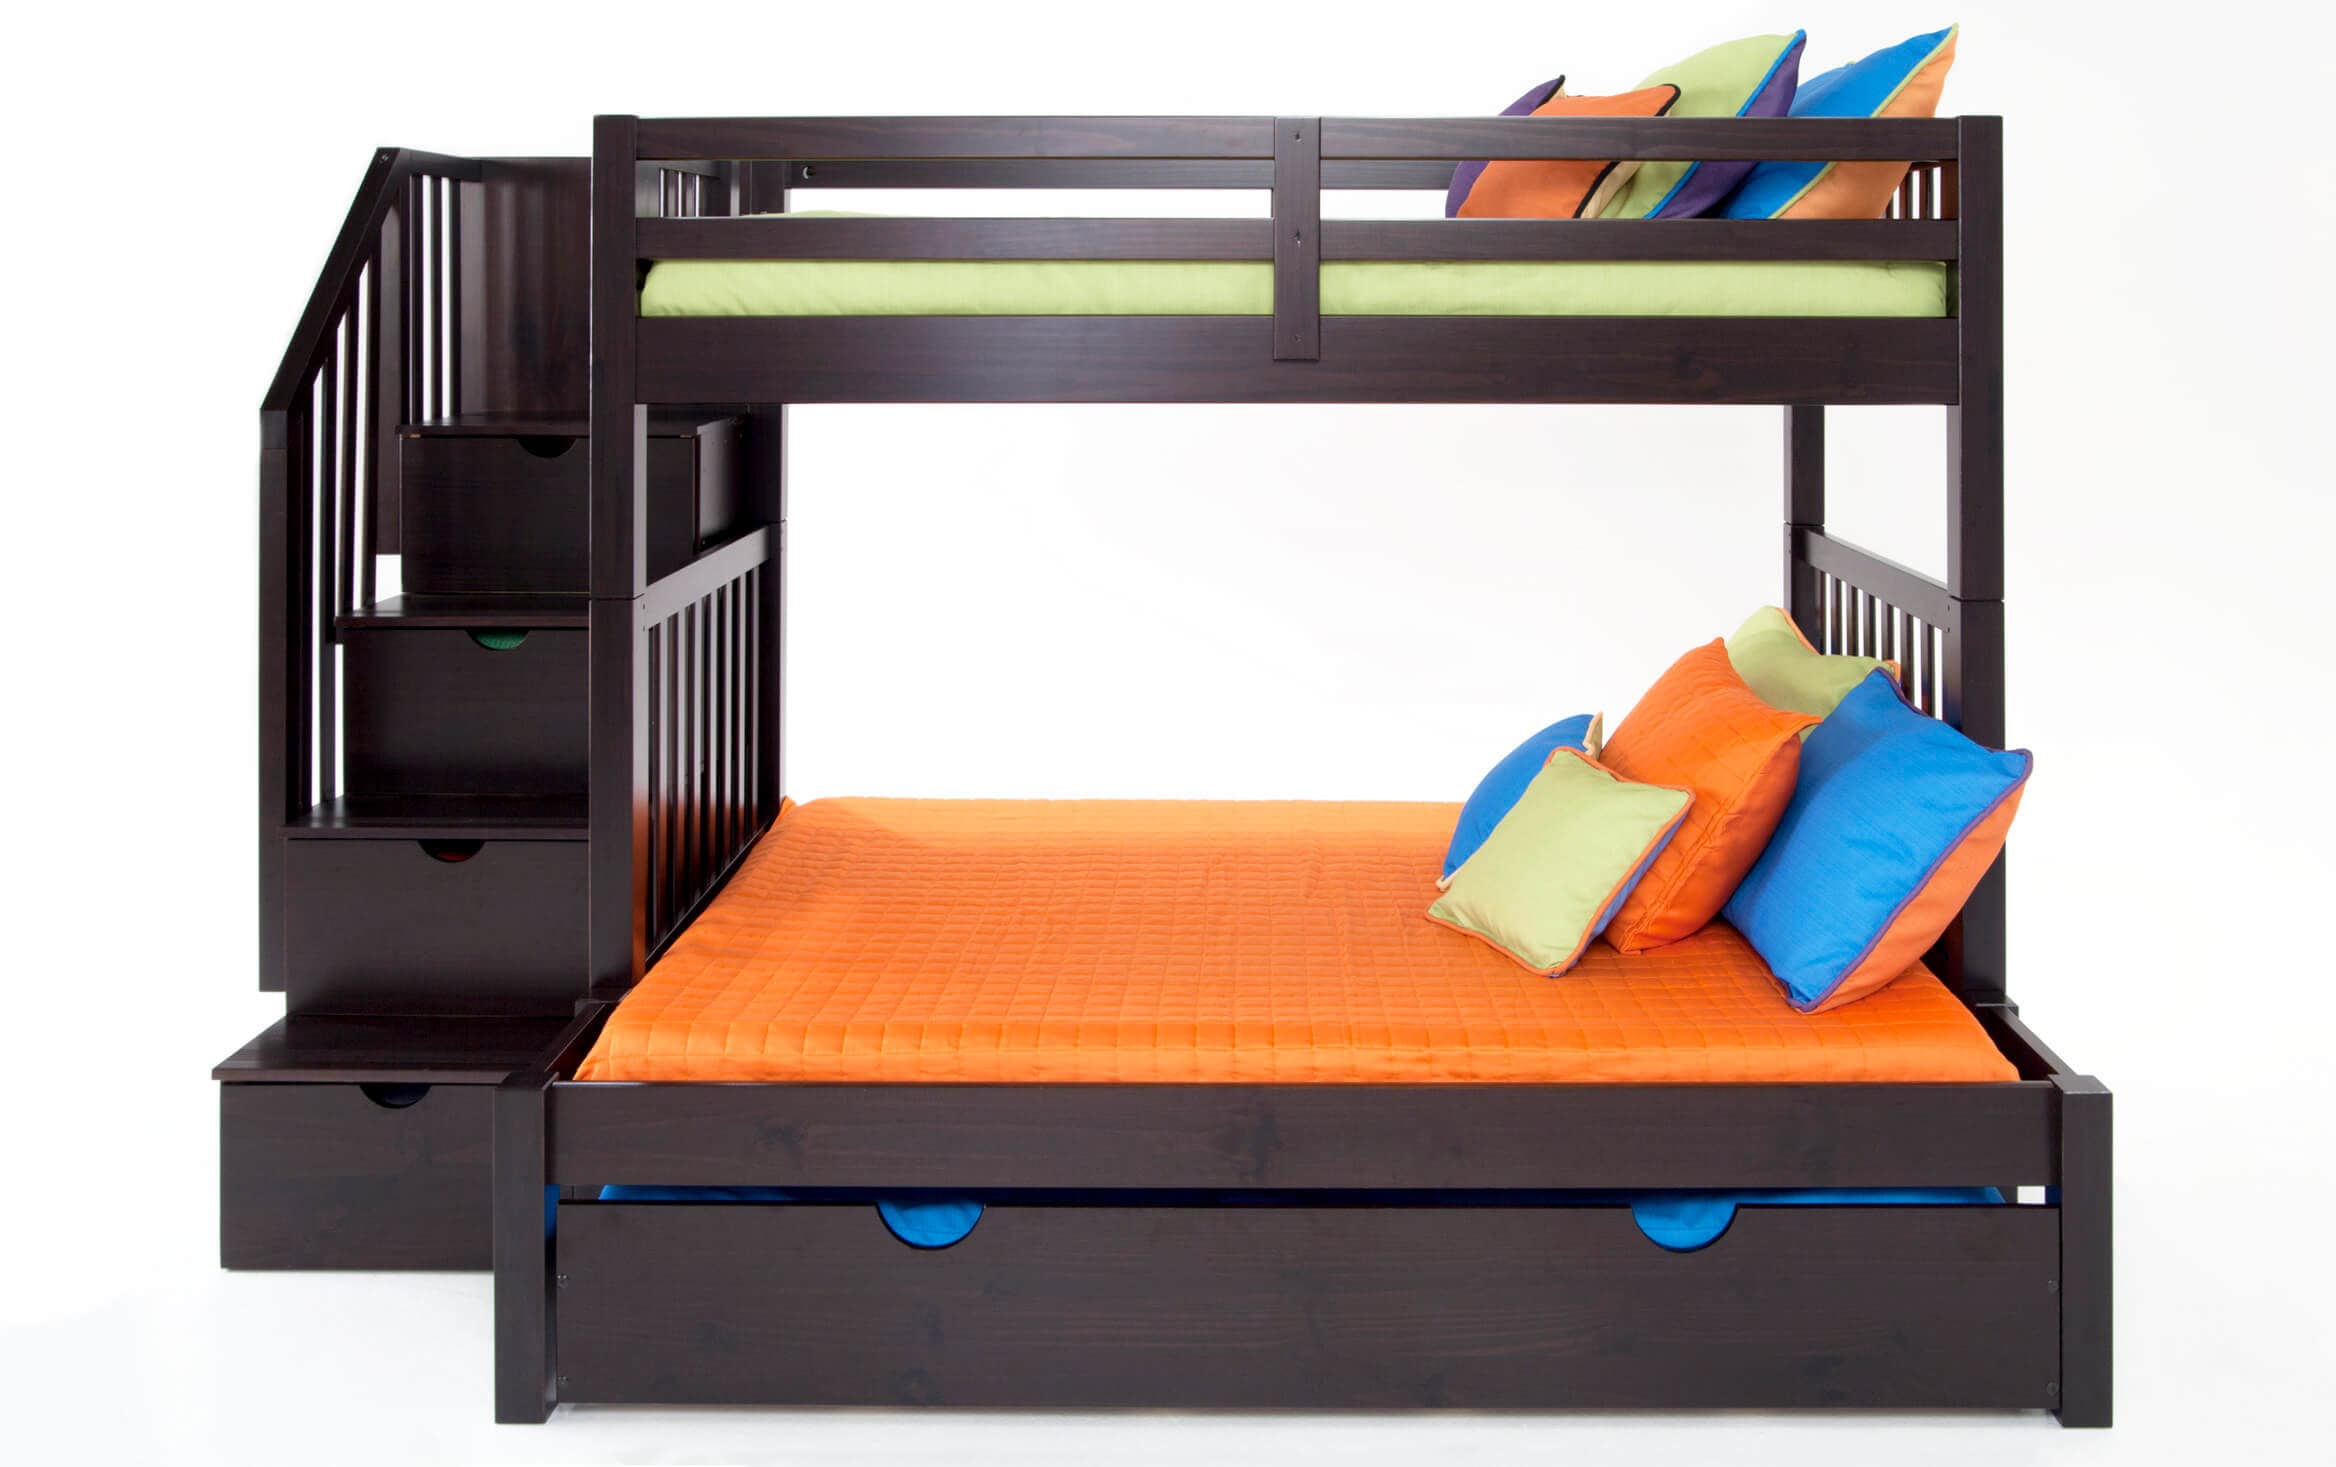 cheap childrens bunk beds with mattress